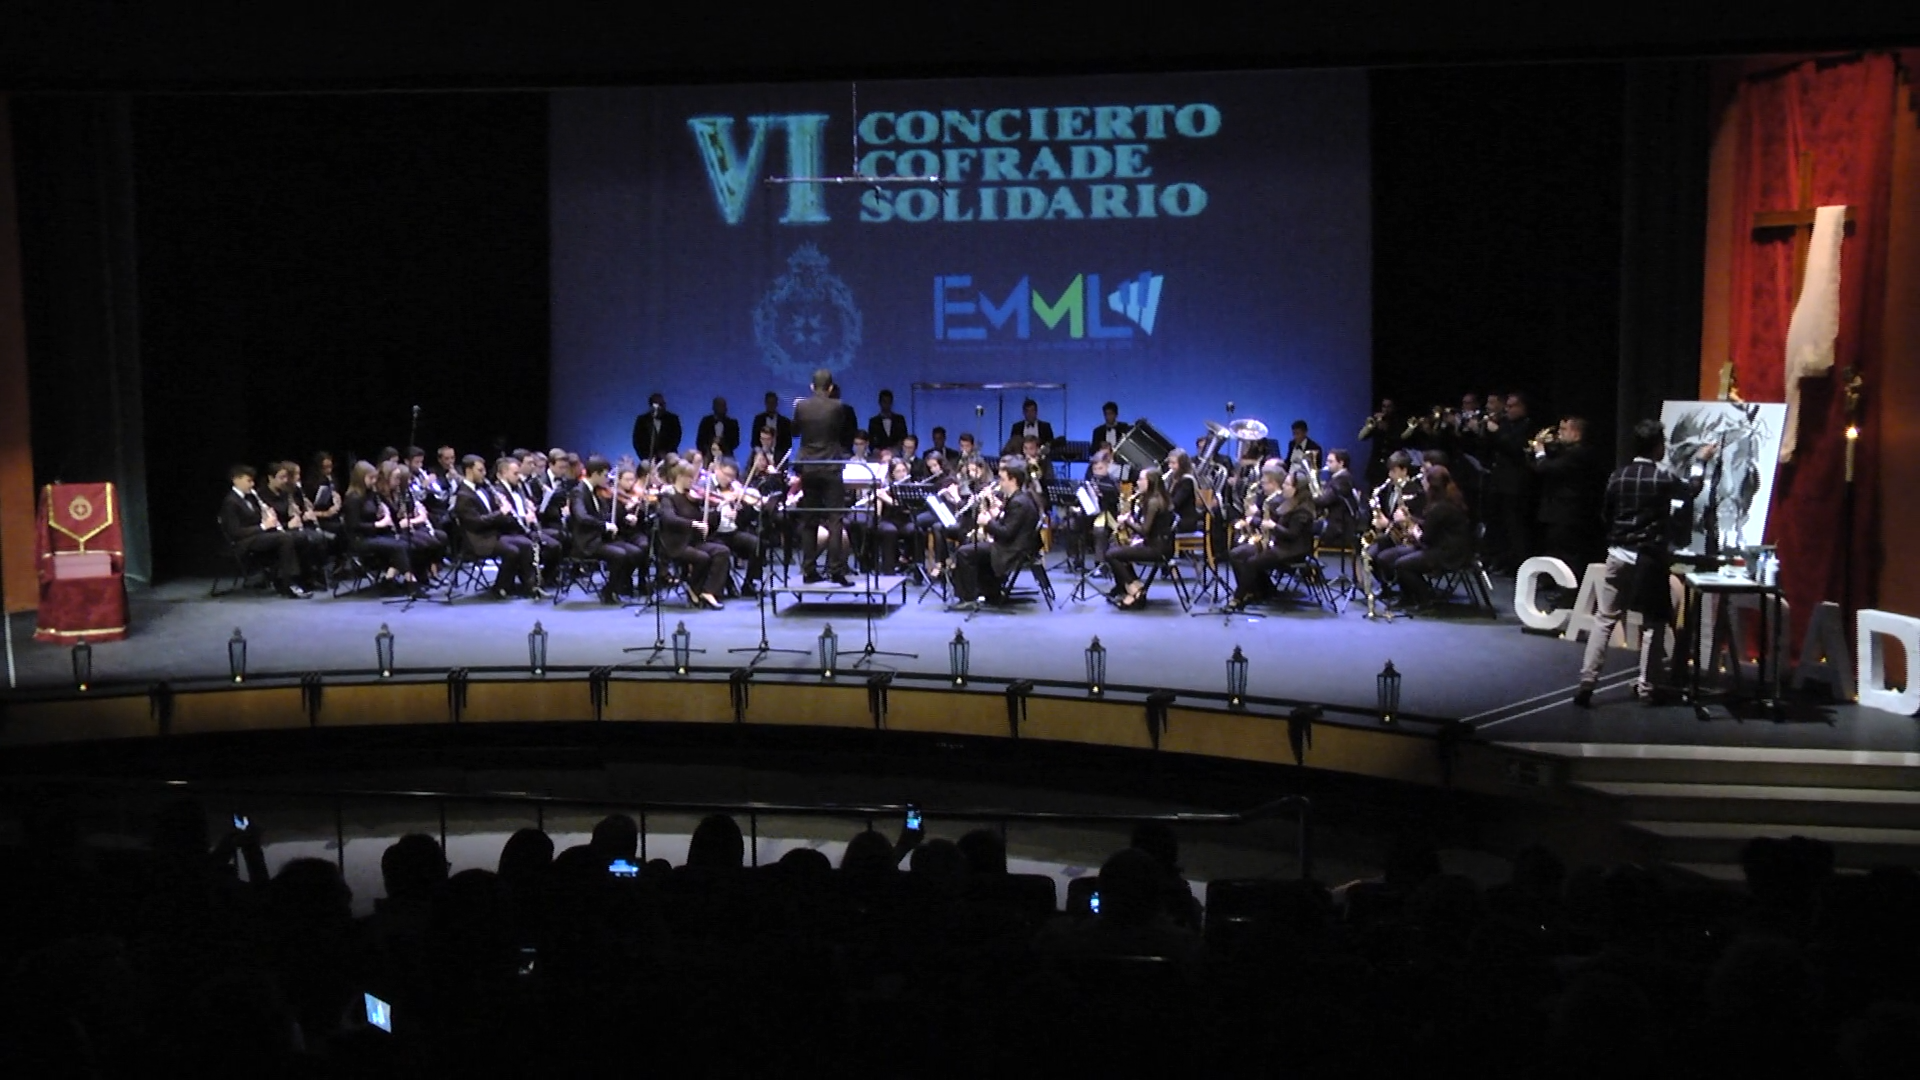 La Banda Sinfónica Municipal de Lepe celebrará el VIII Concierto Cofrade Solidario